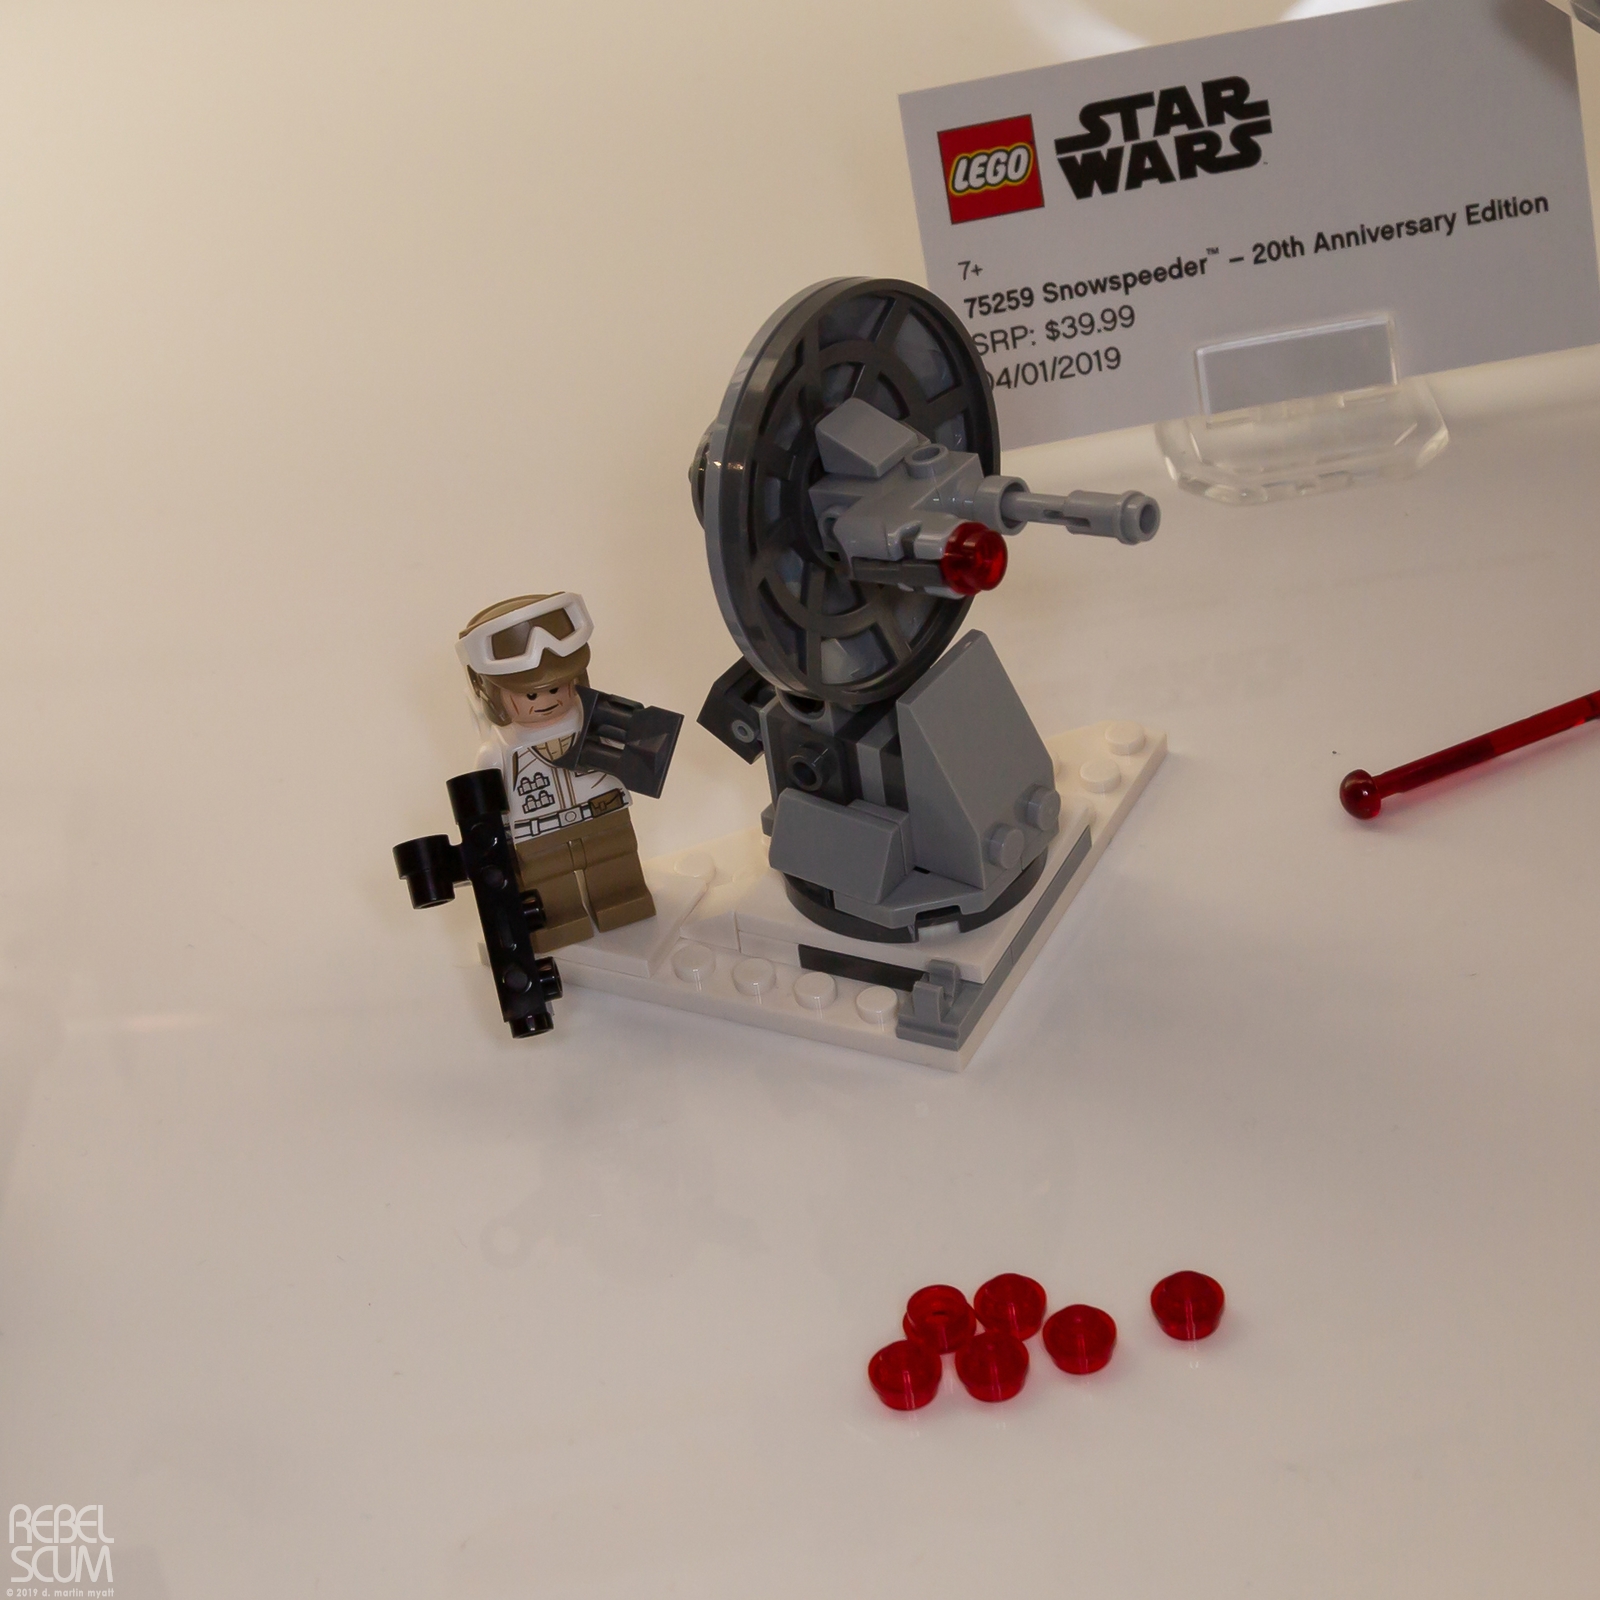 Toy-Fair-New-York-2019-Star-Wars-LEGO-037.jpg